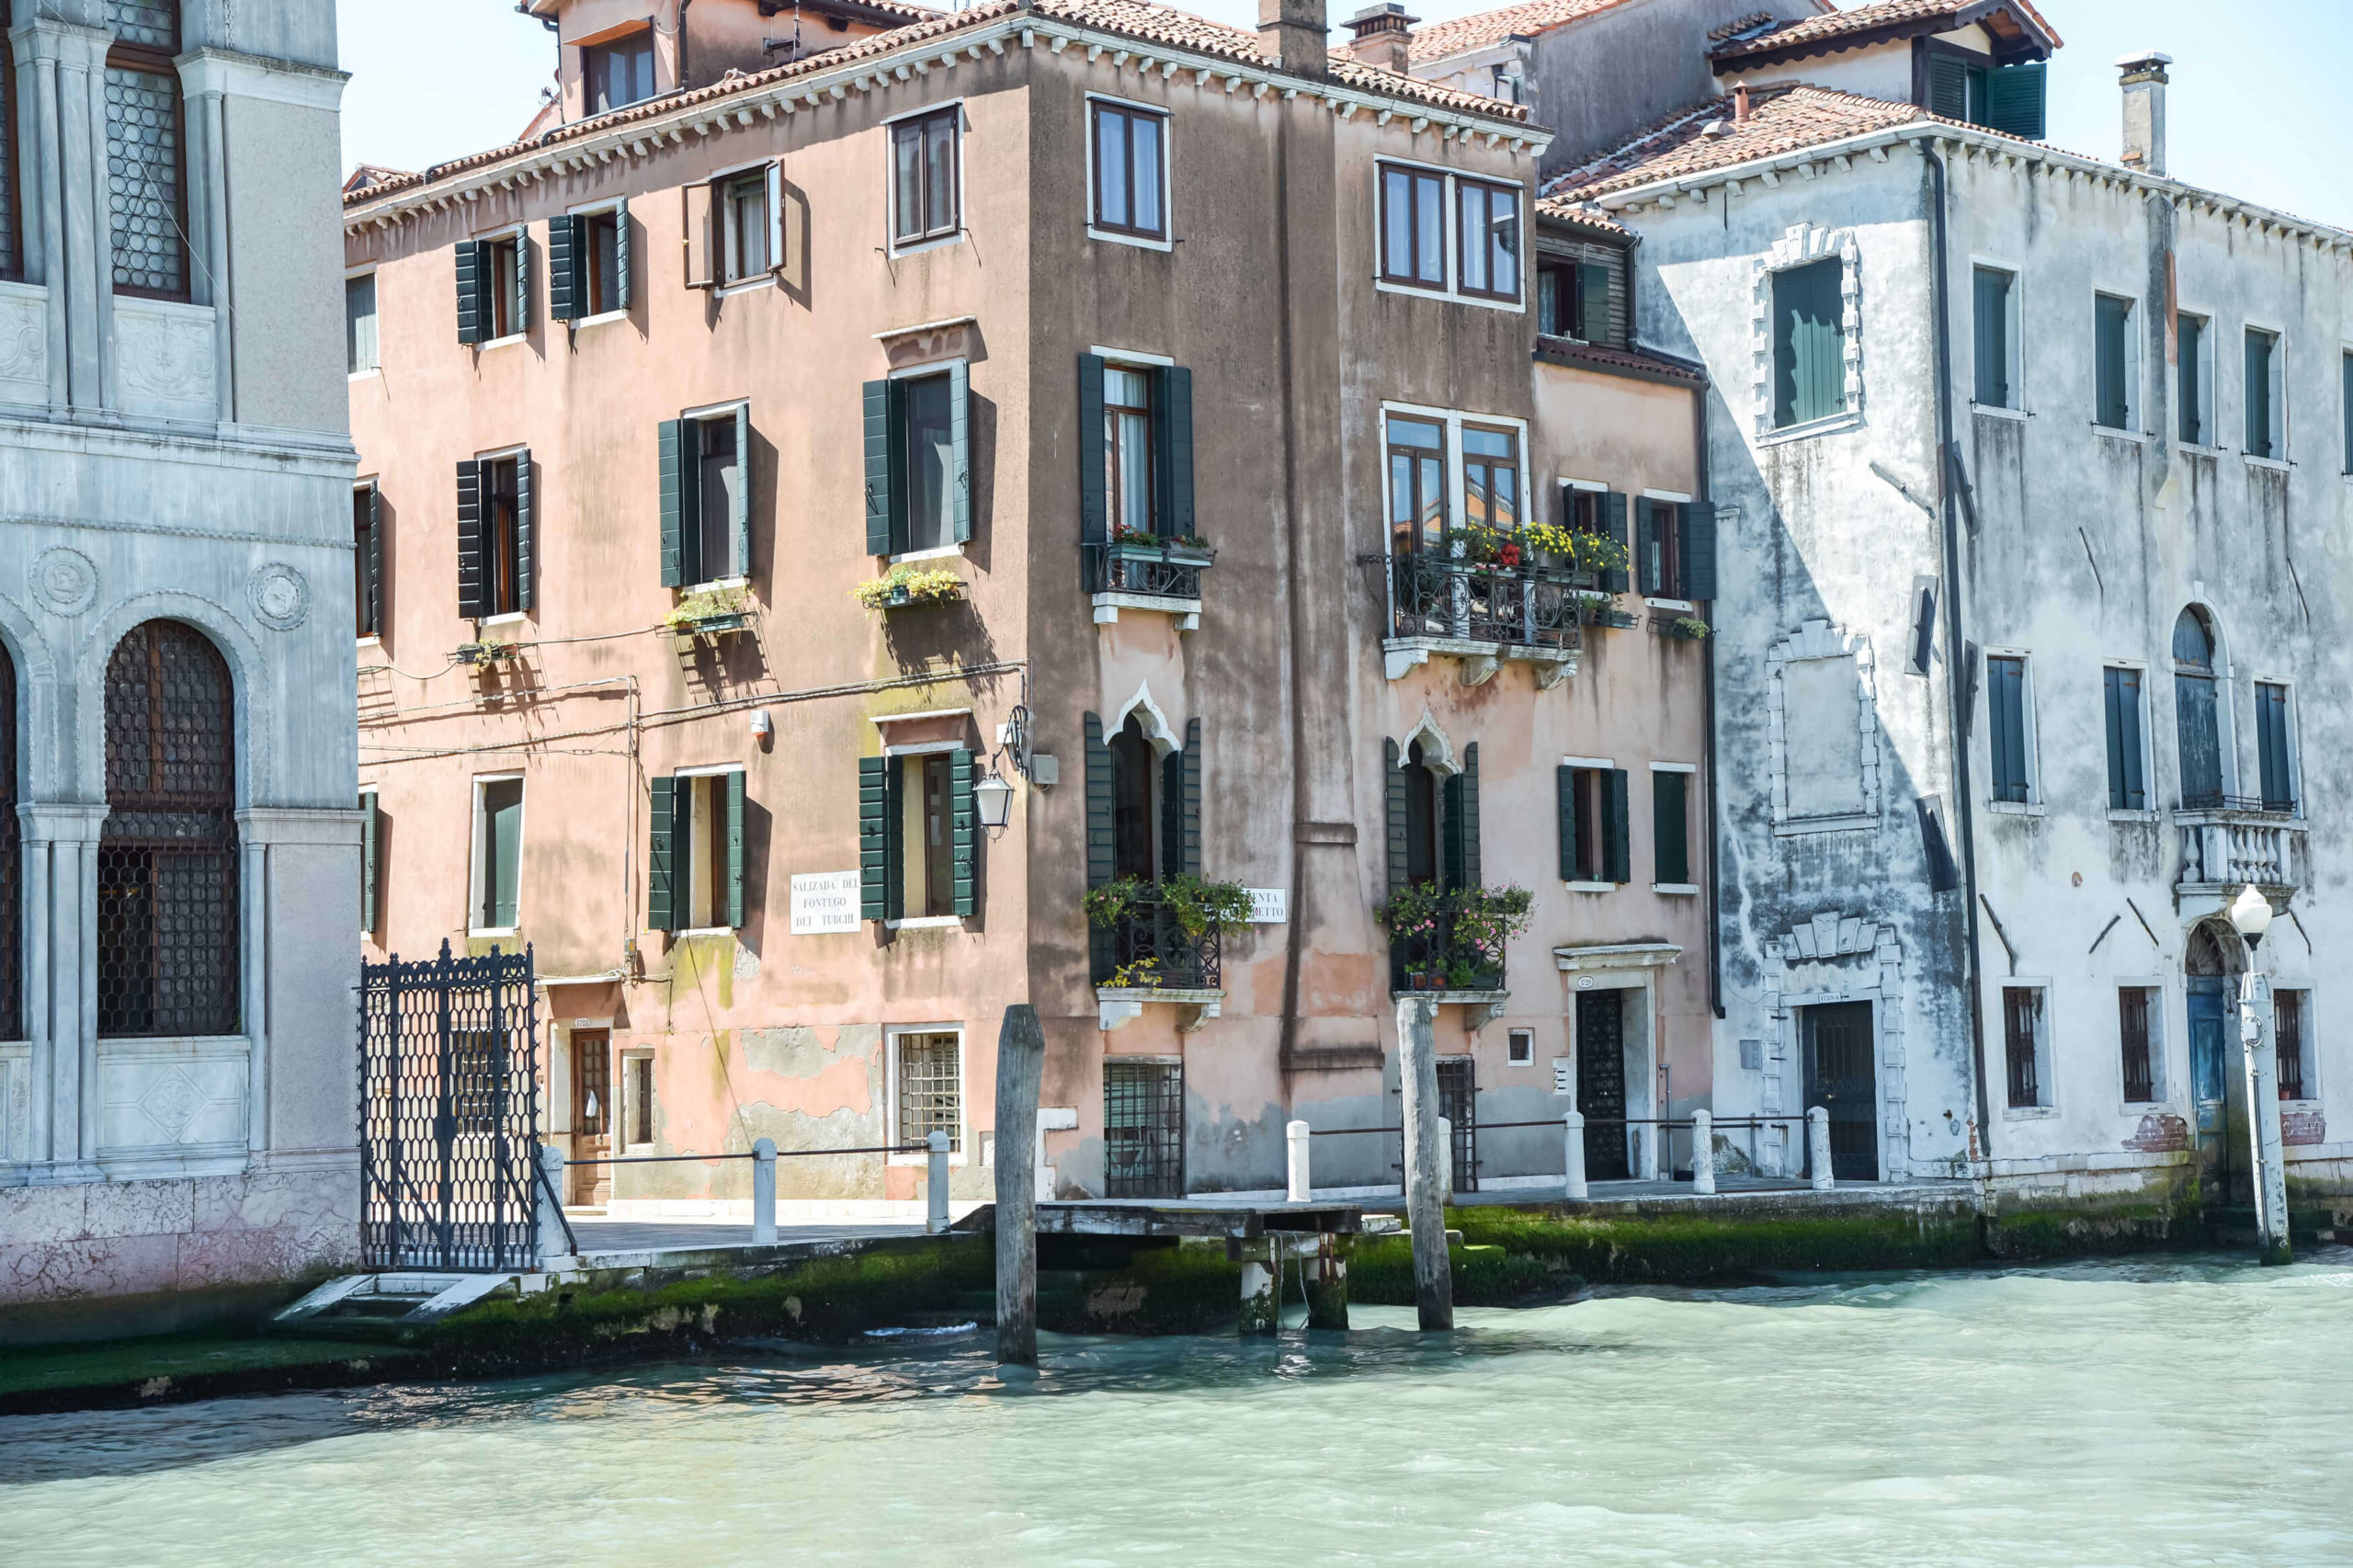 Titelbild für den Reisebericht Venedig in 4 tagen. Aud dem Bild sieht man ein älteres Gebäude welches direkt an einem Kanal steht.